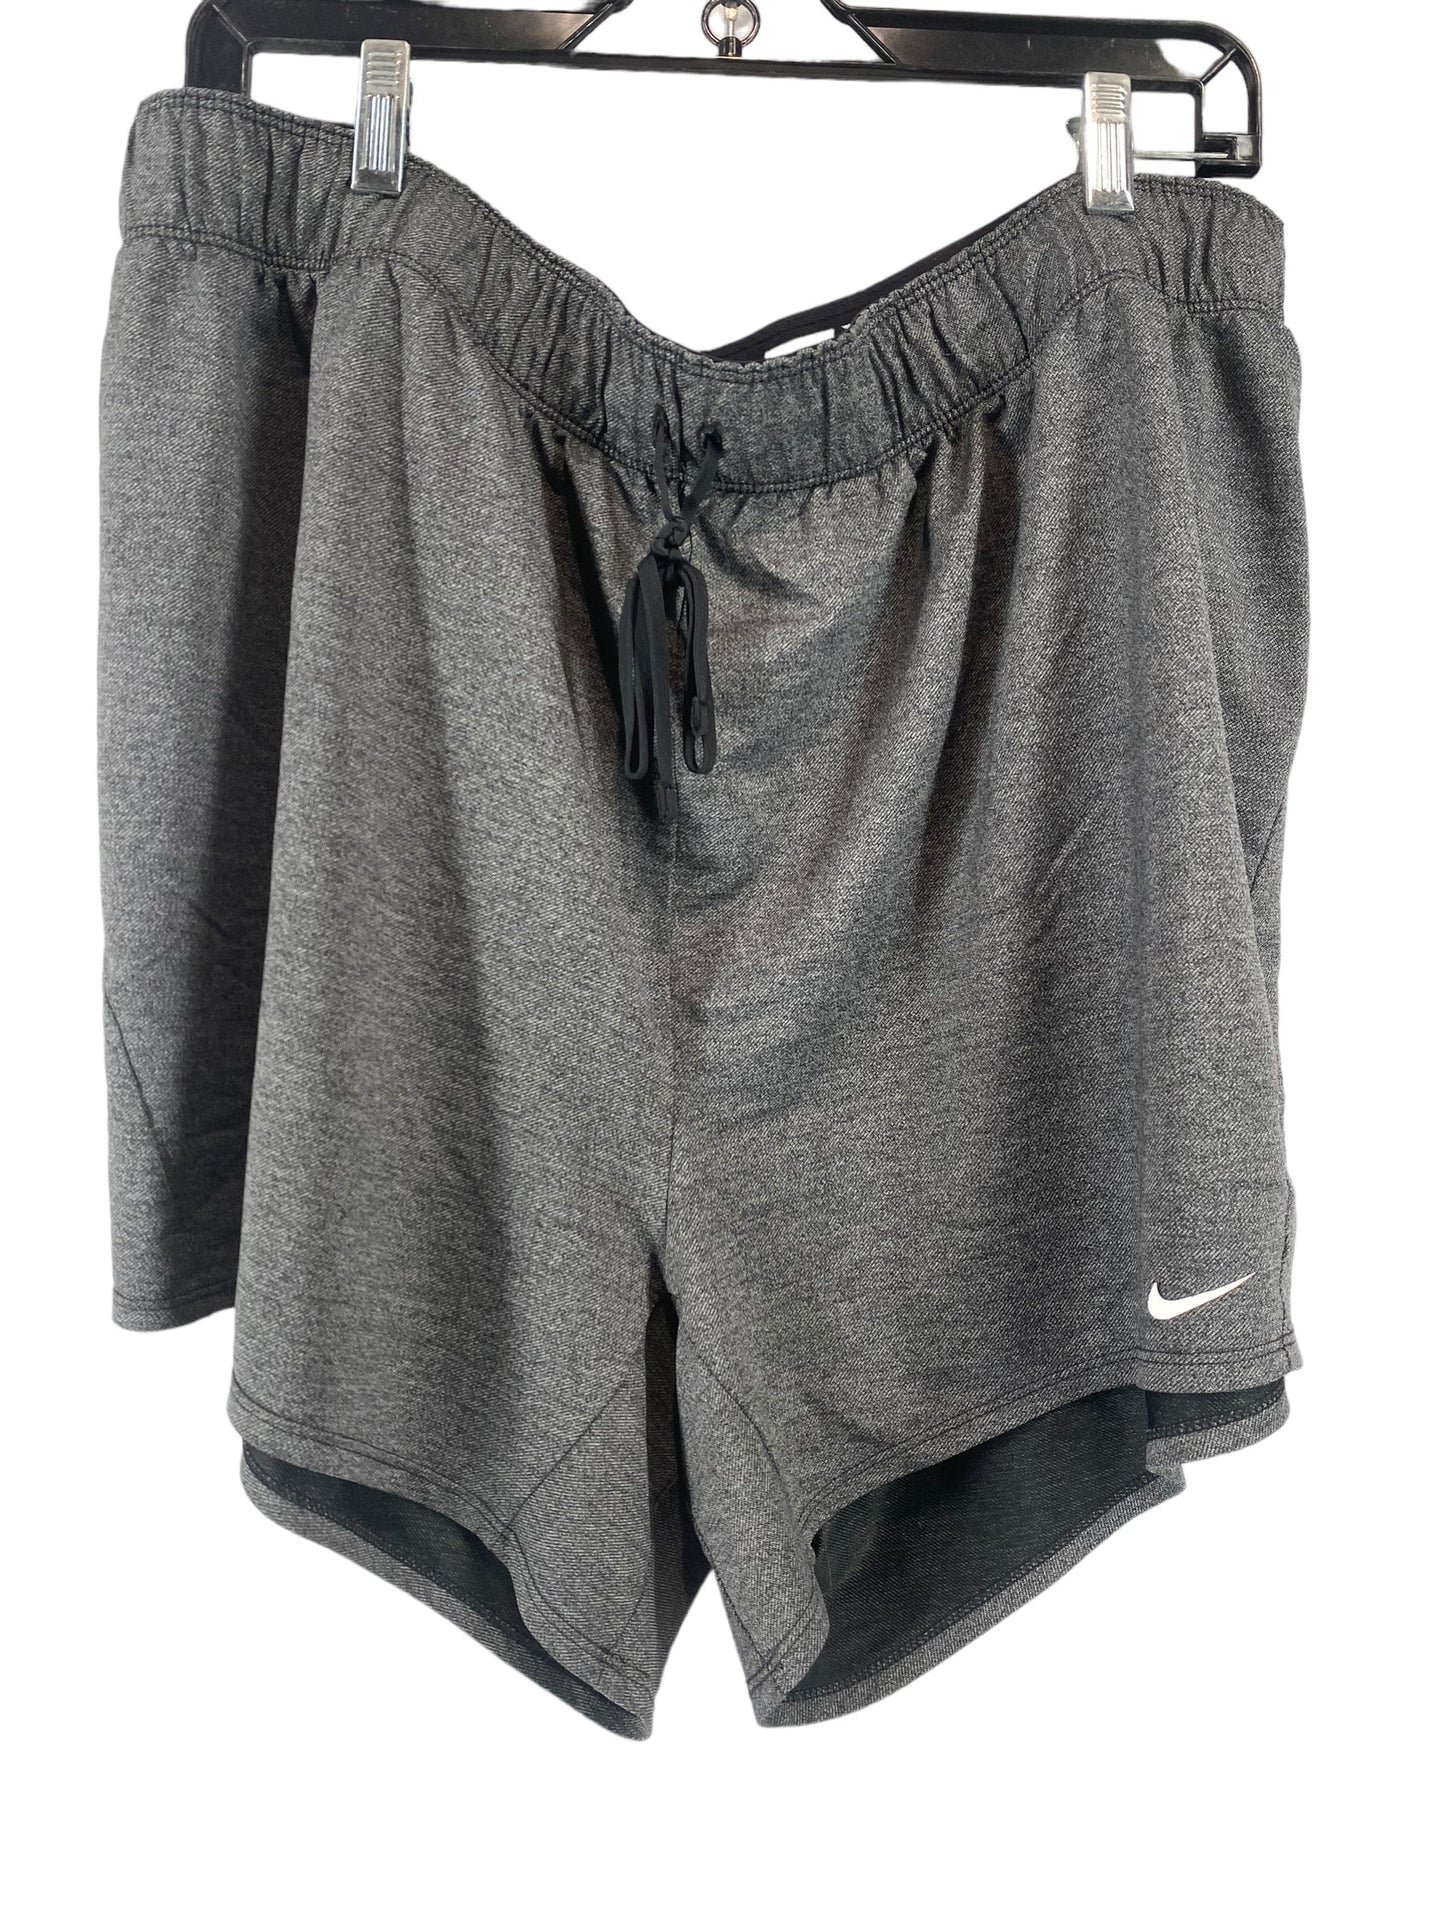 Grey Athletic Shorts Nike Apparel, Size Xl